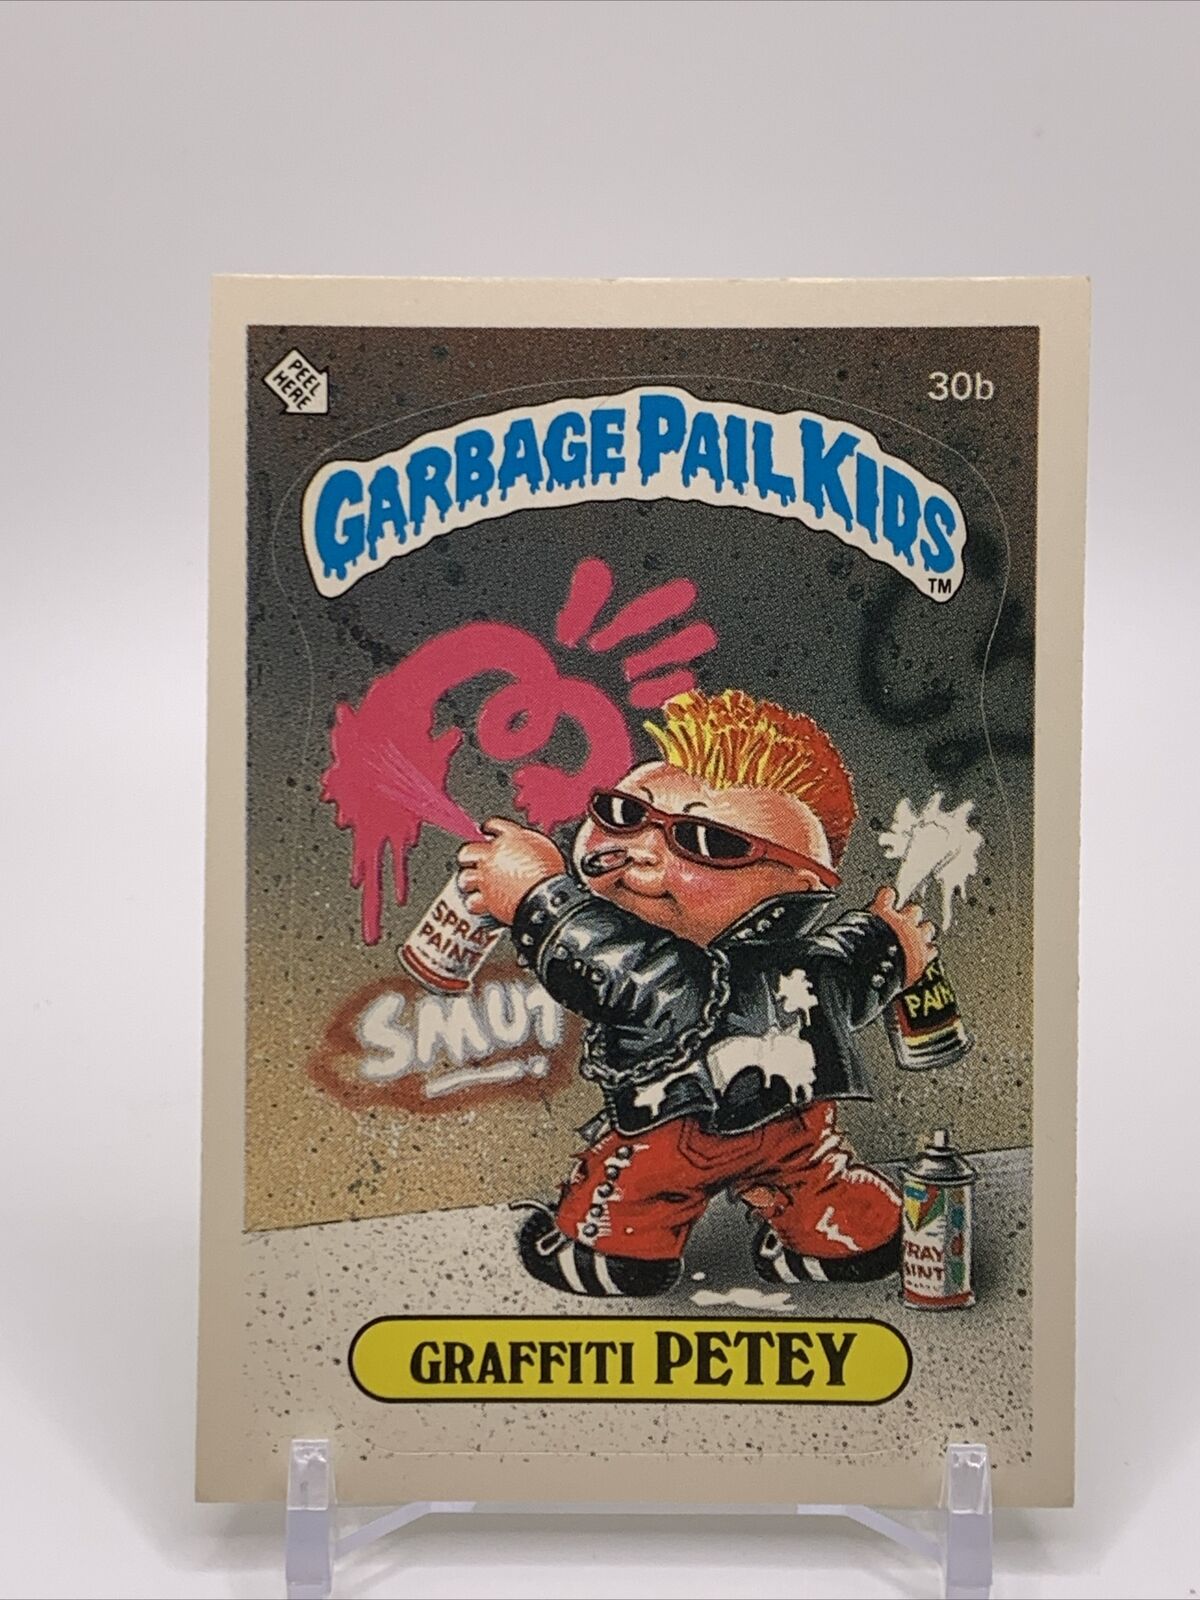 1985 Topps Garbage Pail Kids GPK Original Series 1 OS1#30b Graffiti Petey GLOSSY